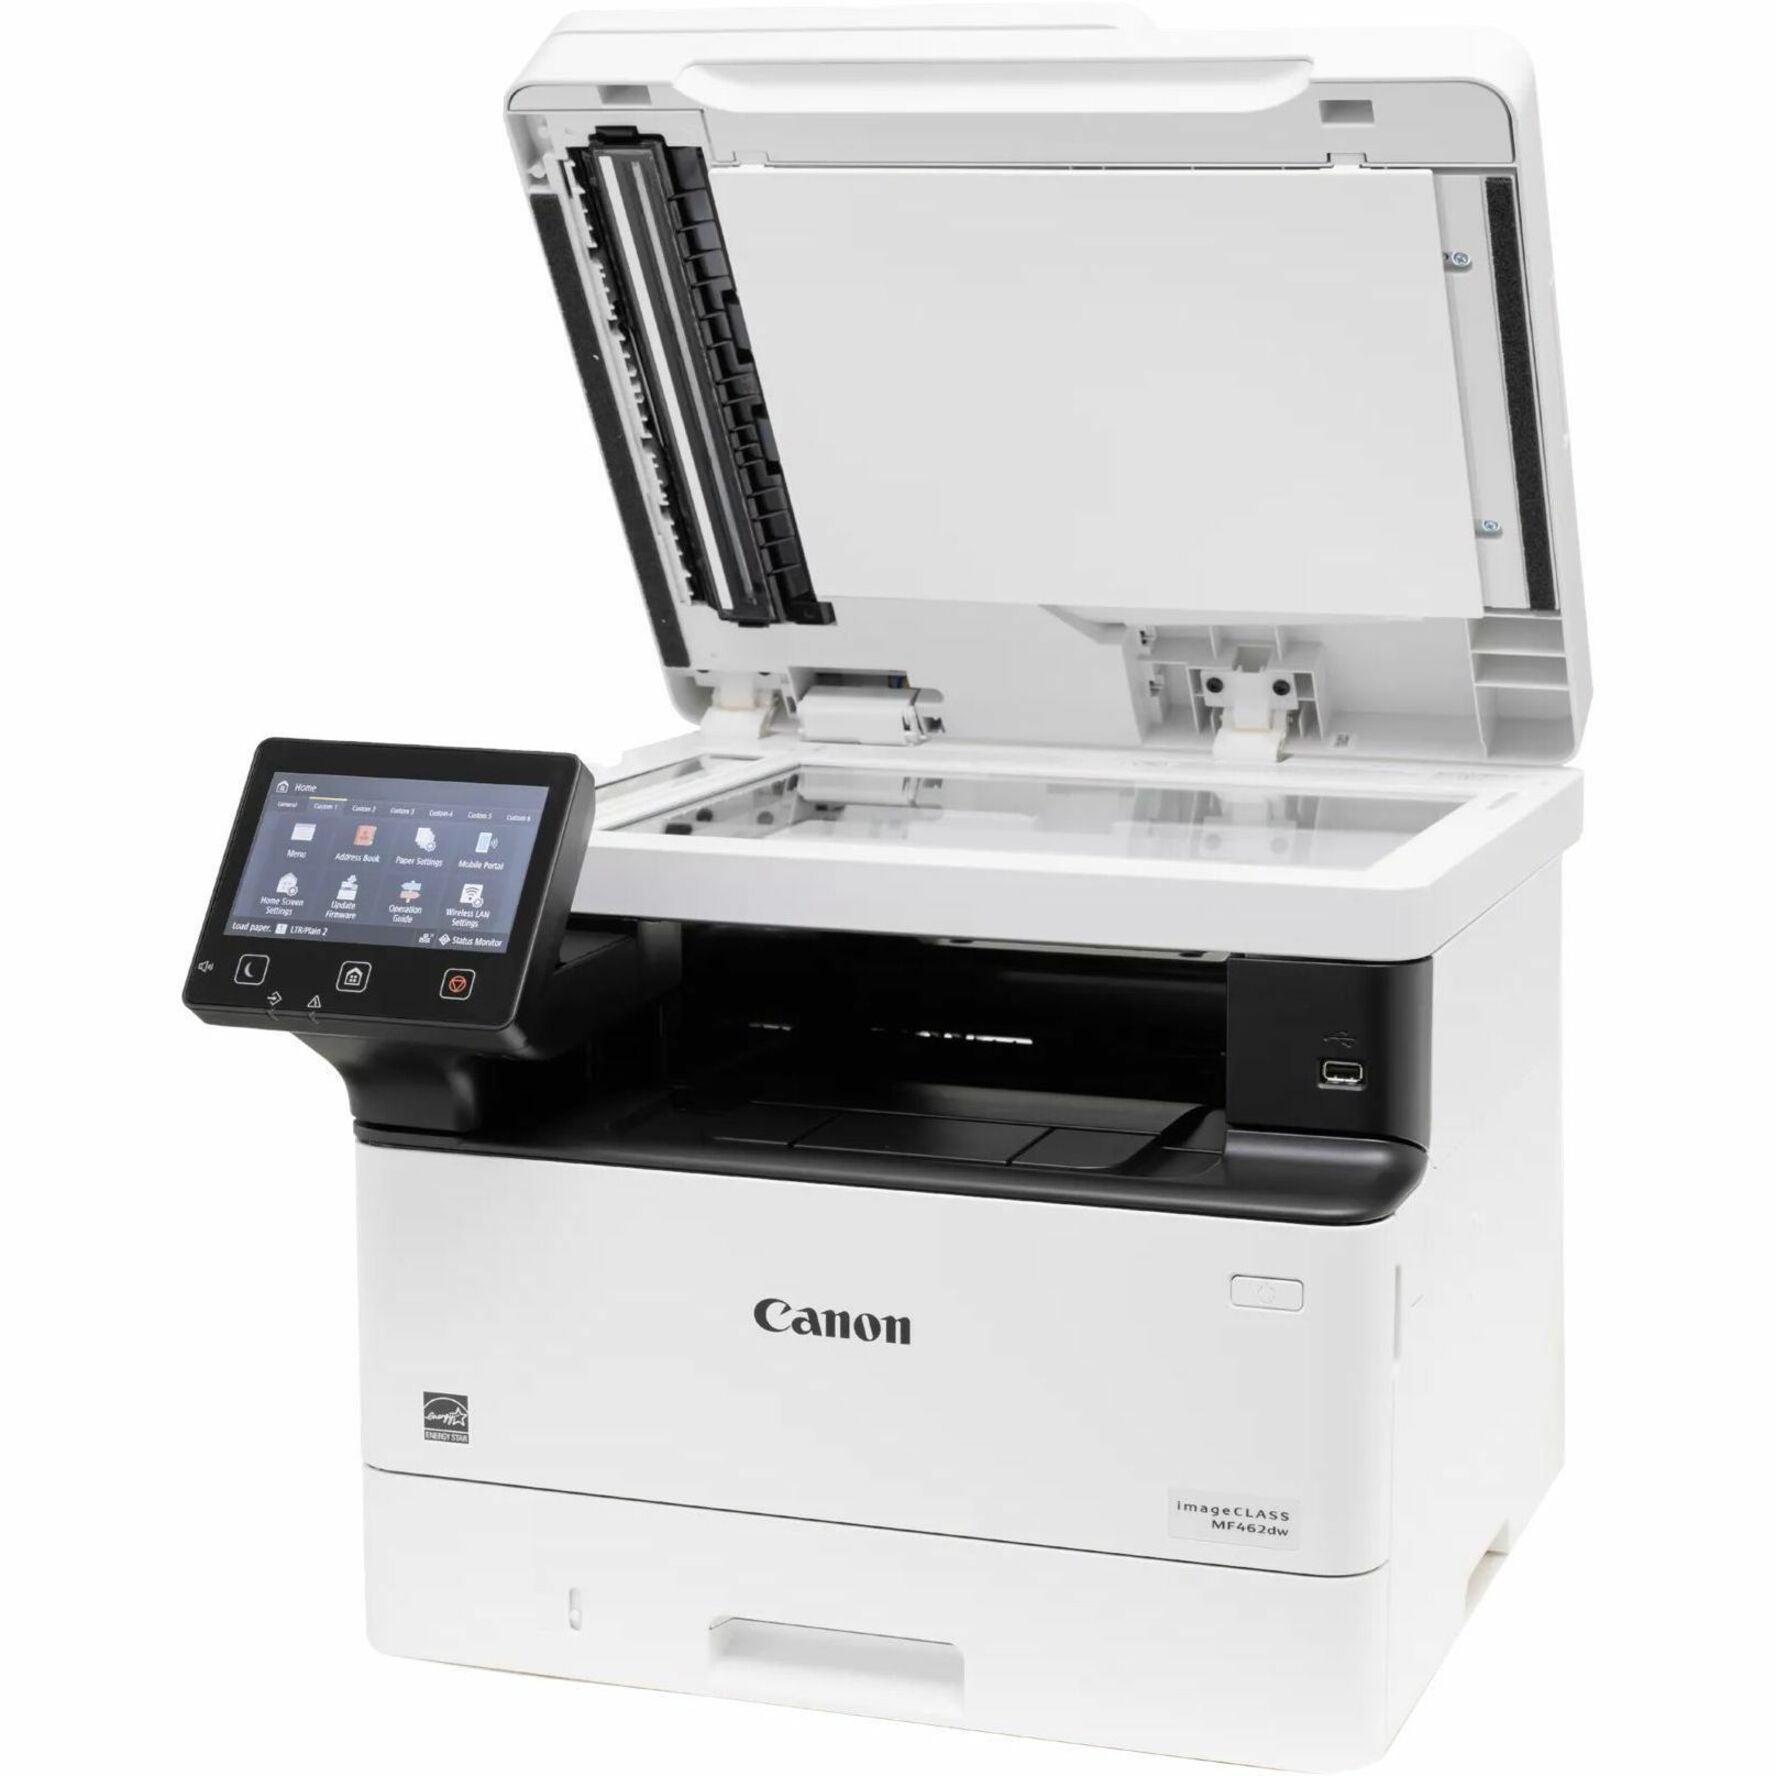 Canon 5951C015 imageCLASS MF462dw All-in-One Wireless Duplex Laserdrucker Monochrom 37 ppm 1200 x 1200 dpi